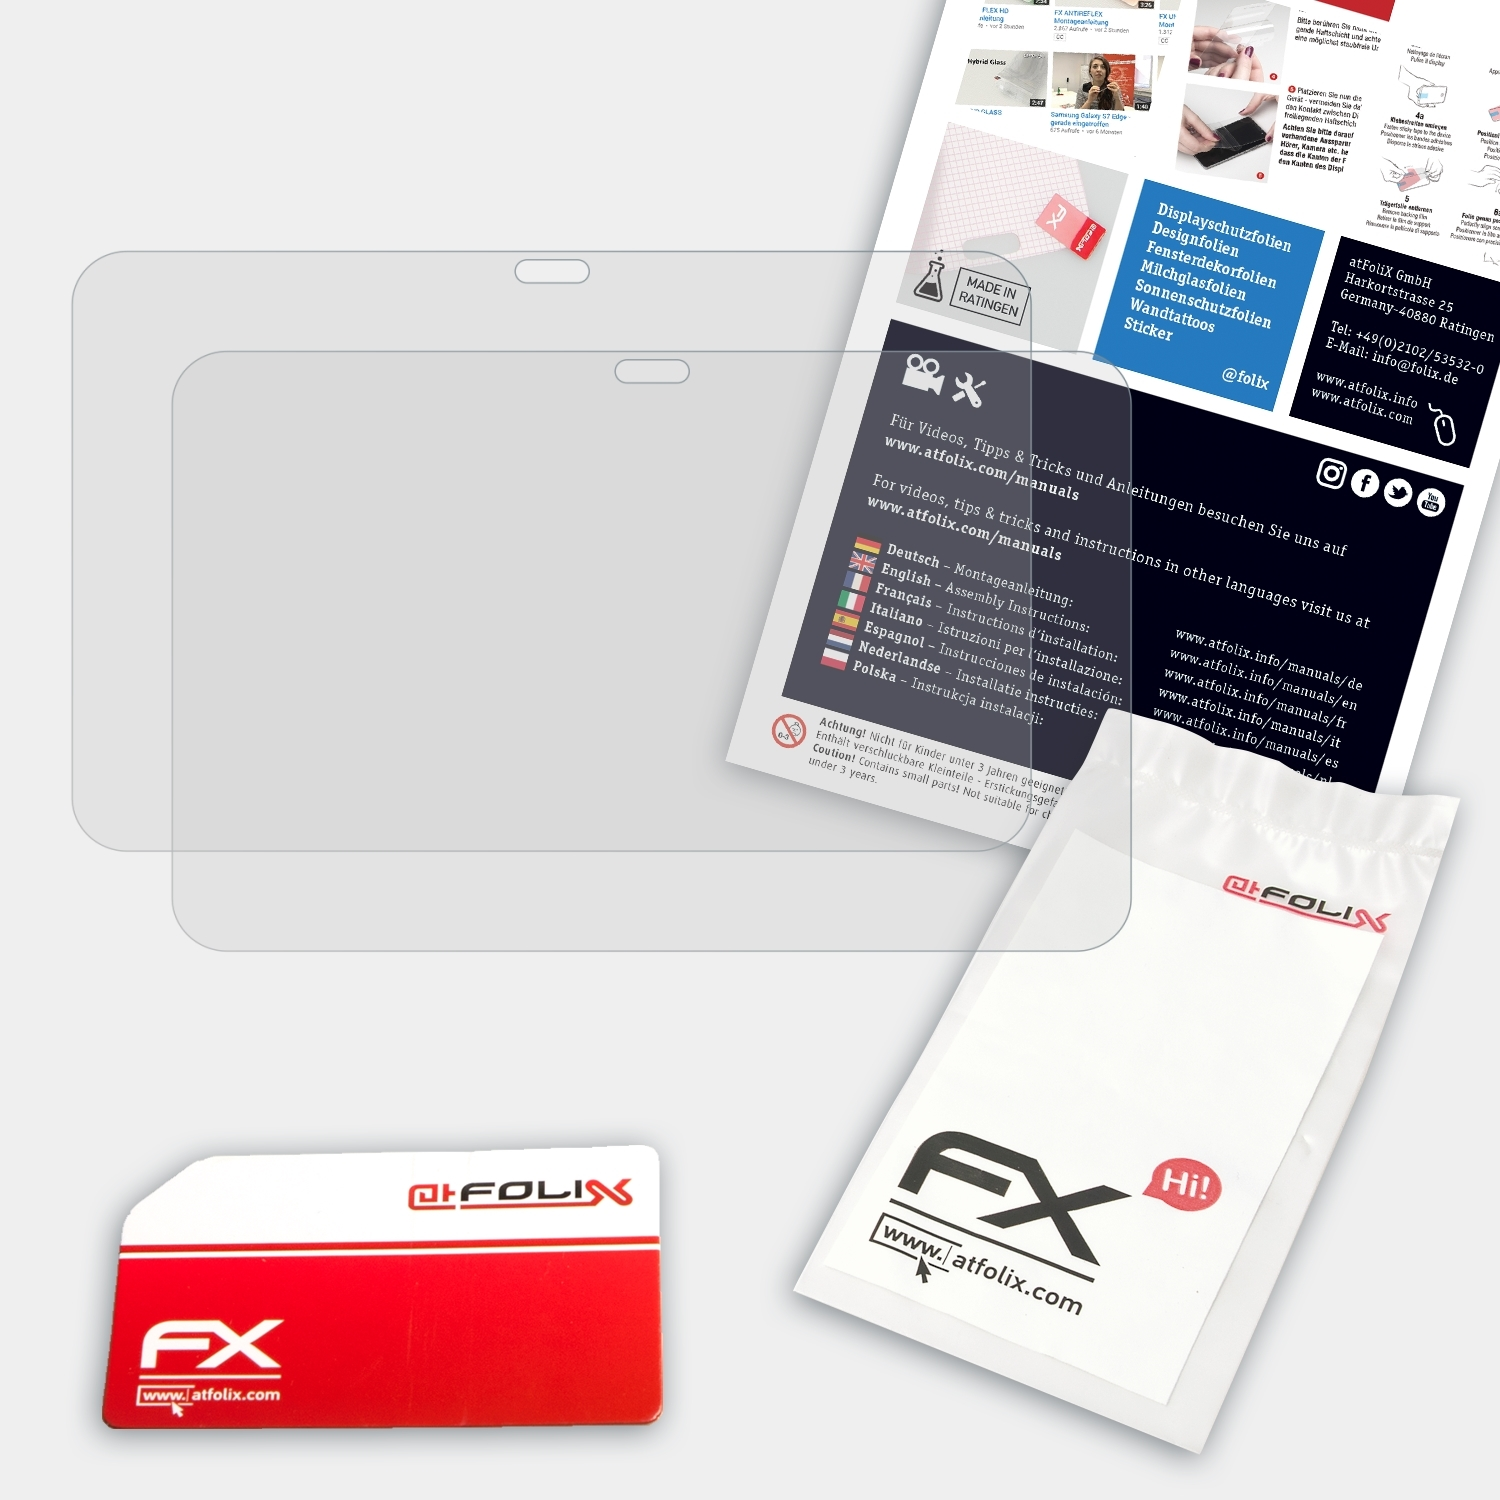 ATFOLIX 2x FX-Antireflex Displayschutz(für FZ-Q2) Toughpad Panasonic